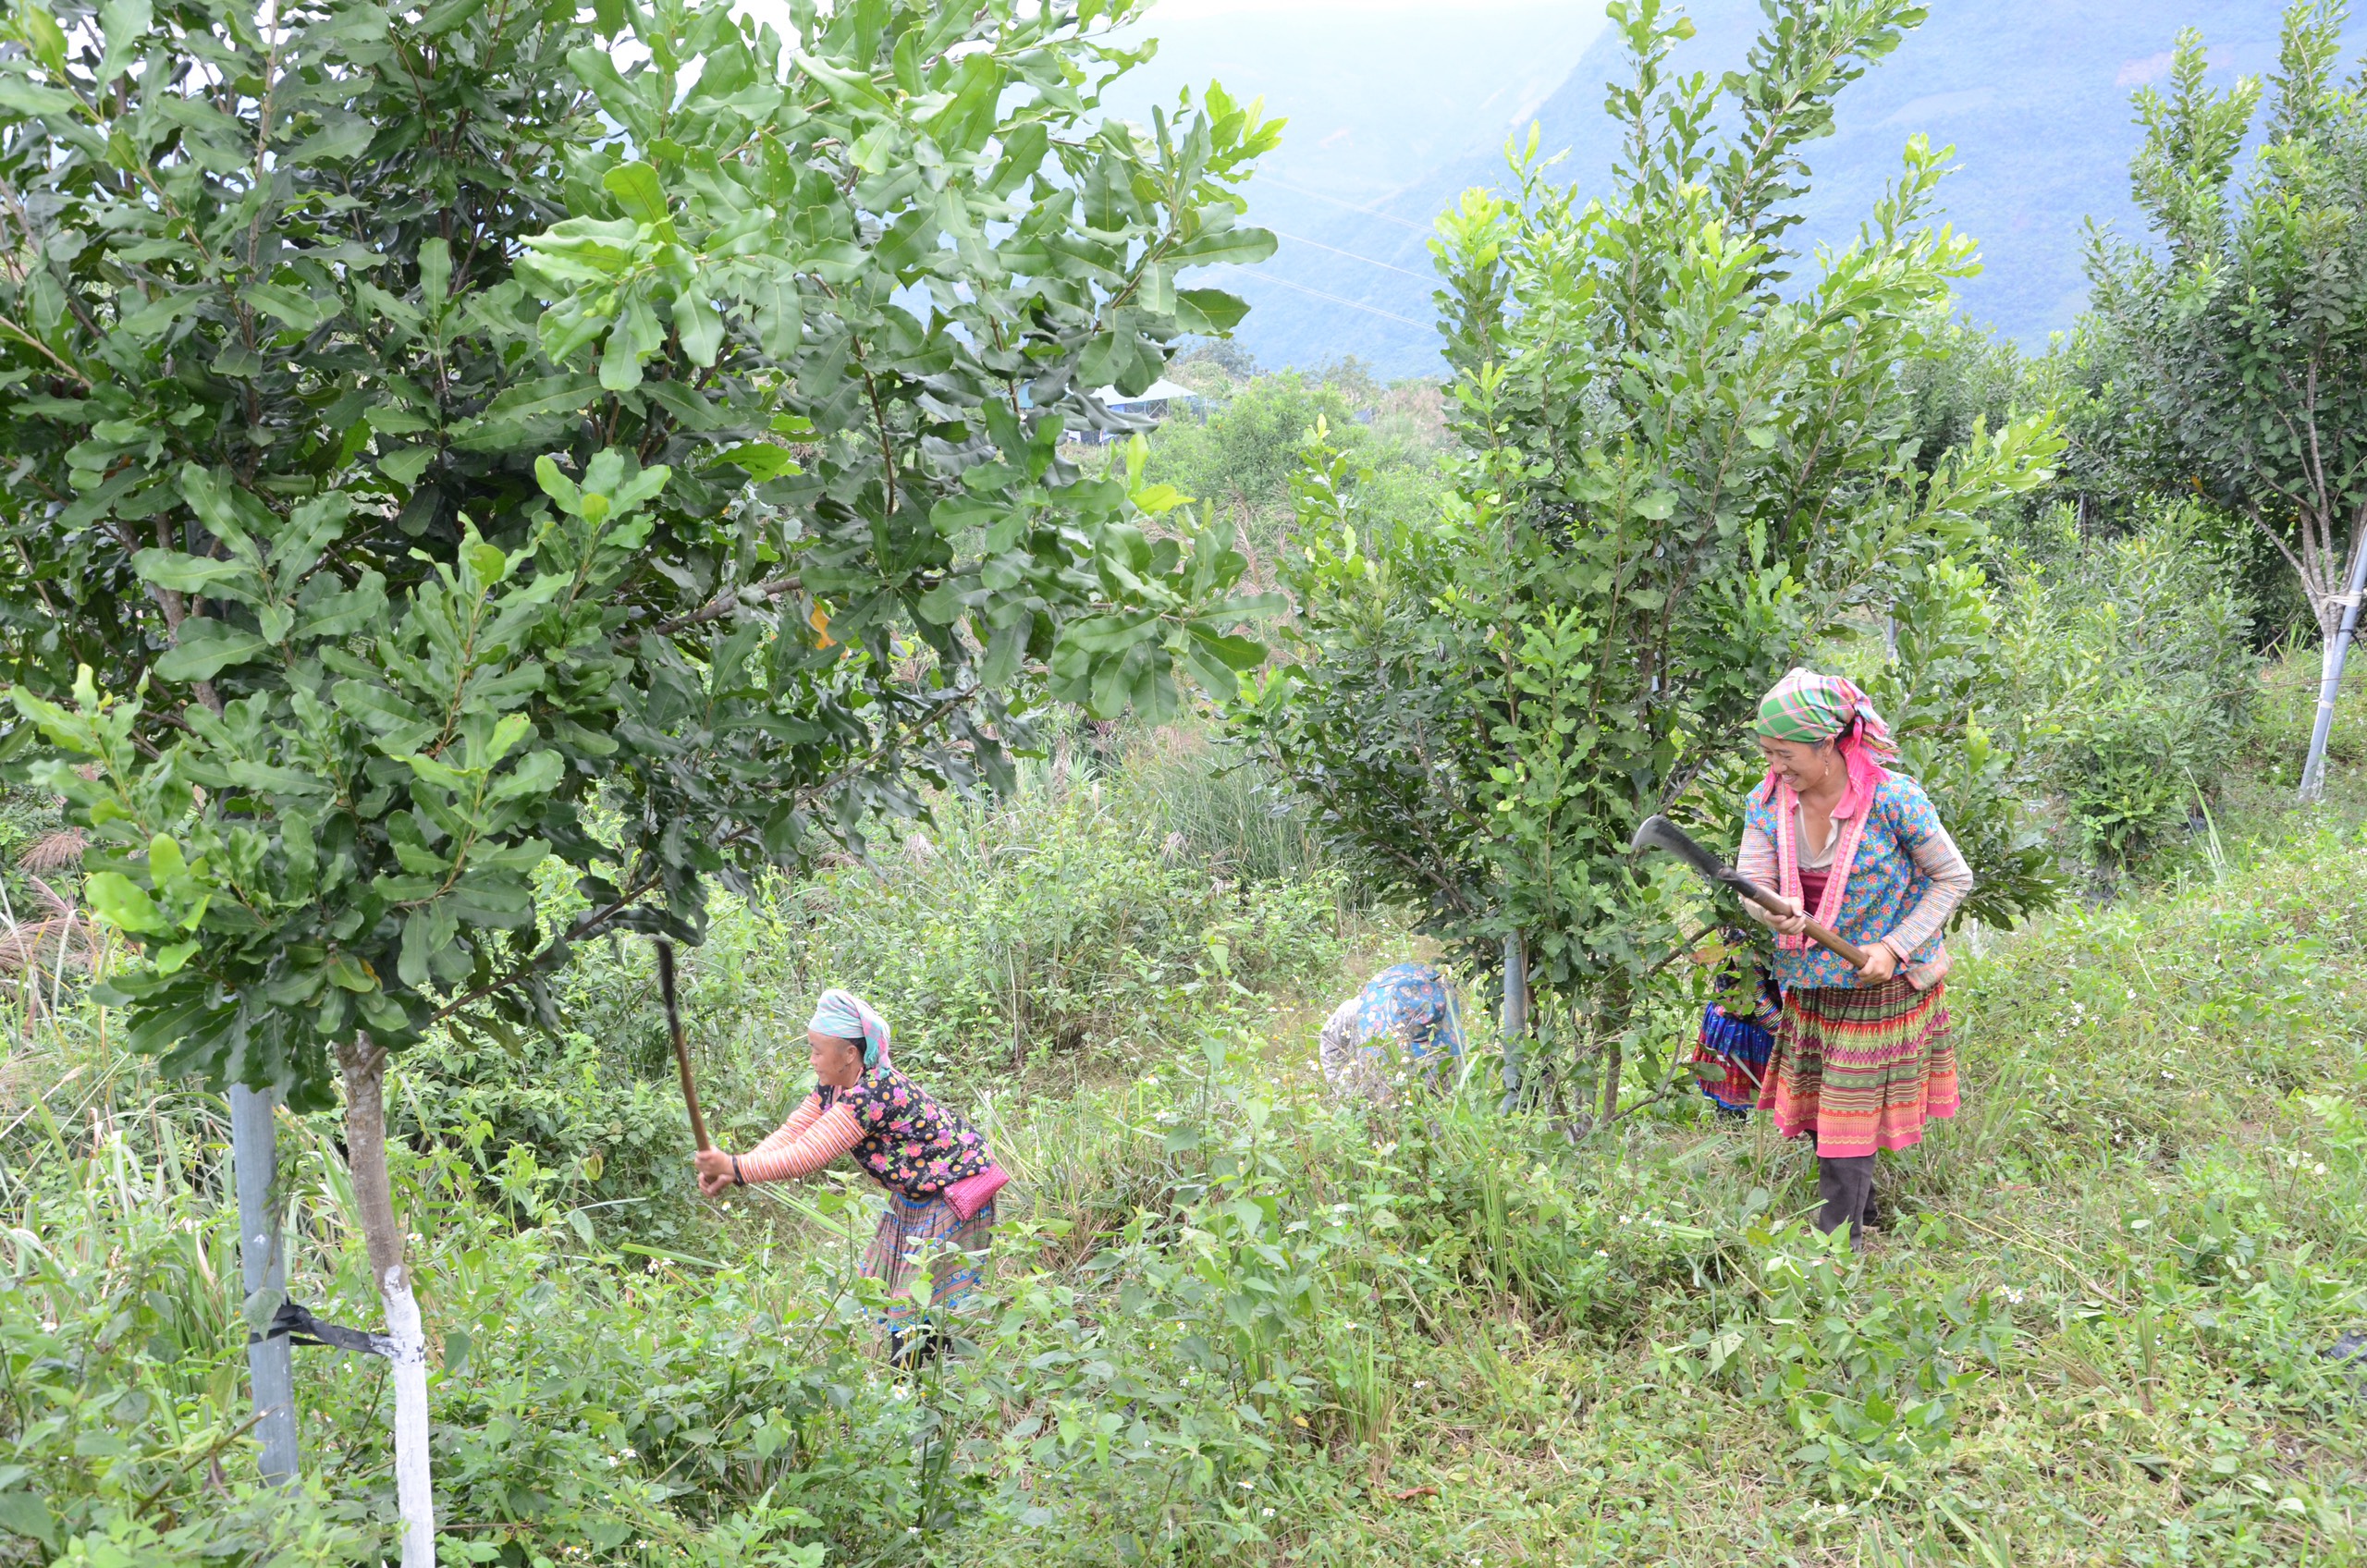 Nhân dân các dân tộc trong tỉnh đã tích cực bảo vệ, trồng rừng mới